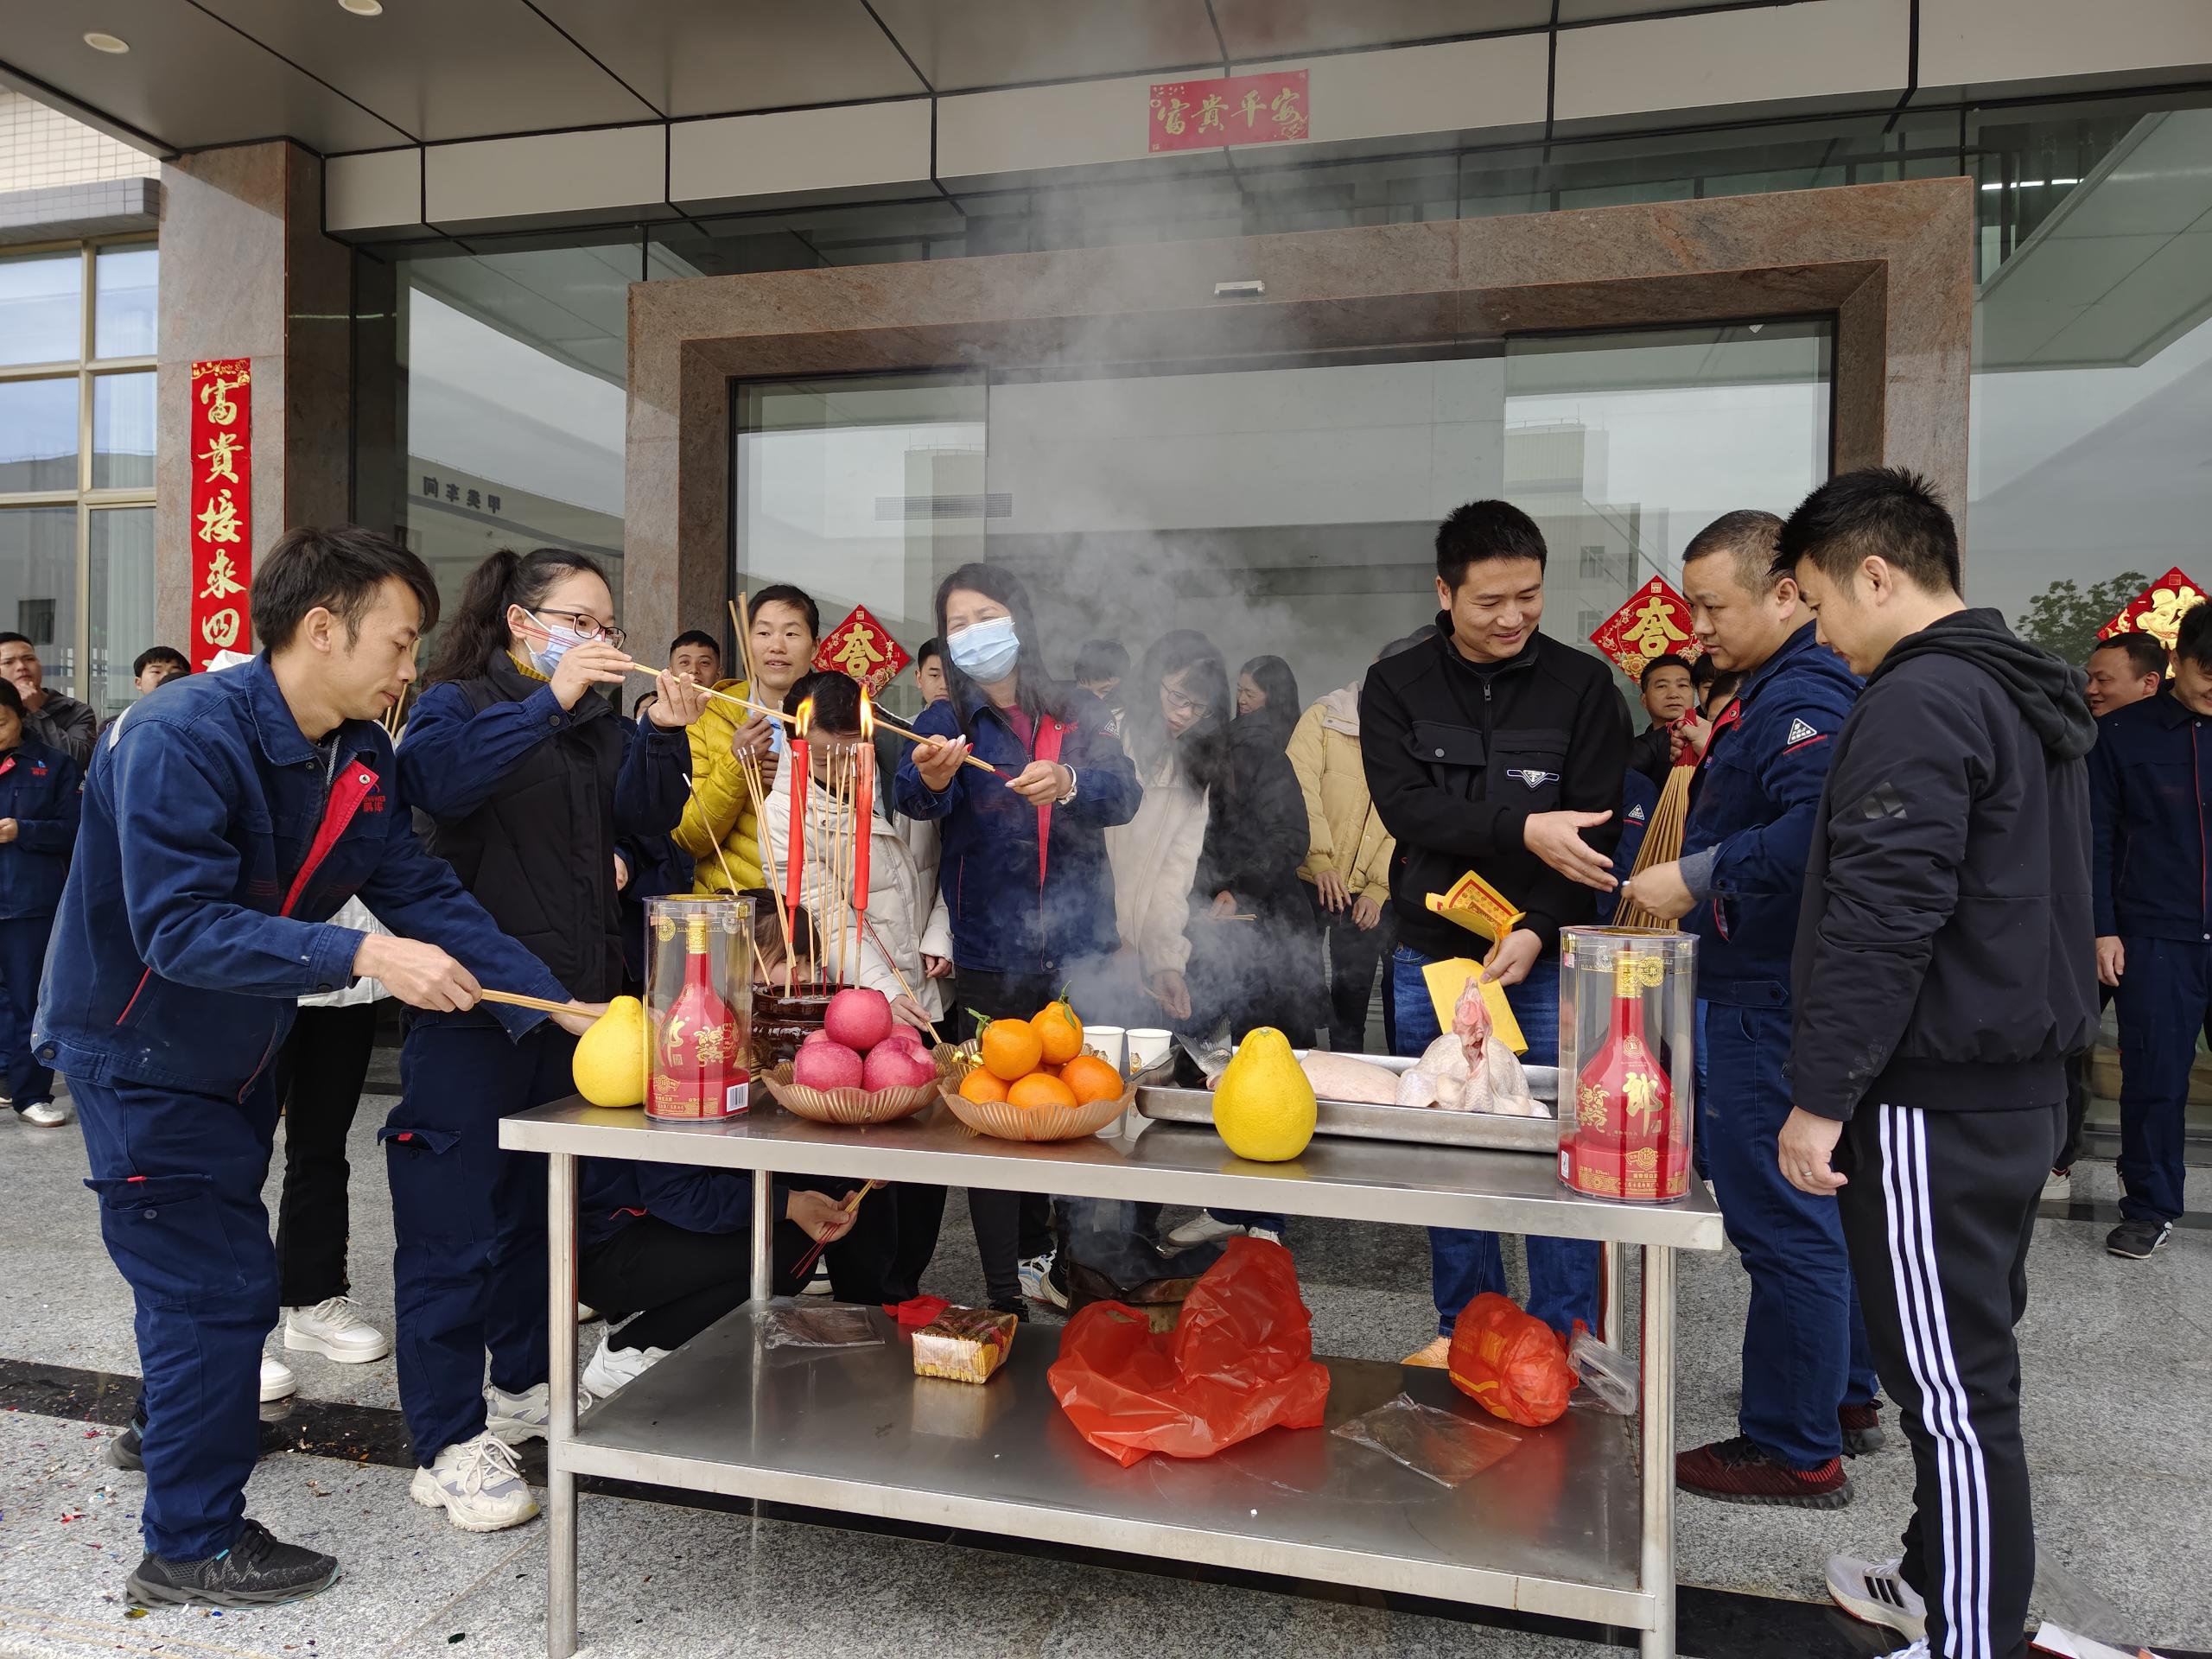 Pengwei 丨 ಚೀನೀ ಹೊಸ ವರ್ಷದ ಶುಭಾಶಯಗಳು! 2023 ರಲ್ಲಿ ನಮ್ಮ ಕೆಲಸದ ಹೊಸ ಆರಂಭಕ್ಕೆ ಶುಭವಾಗಲಿ